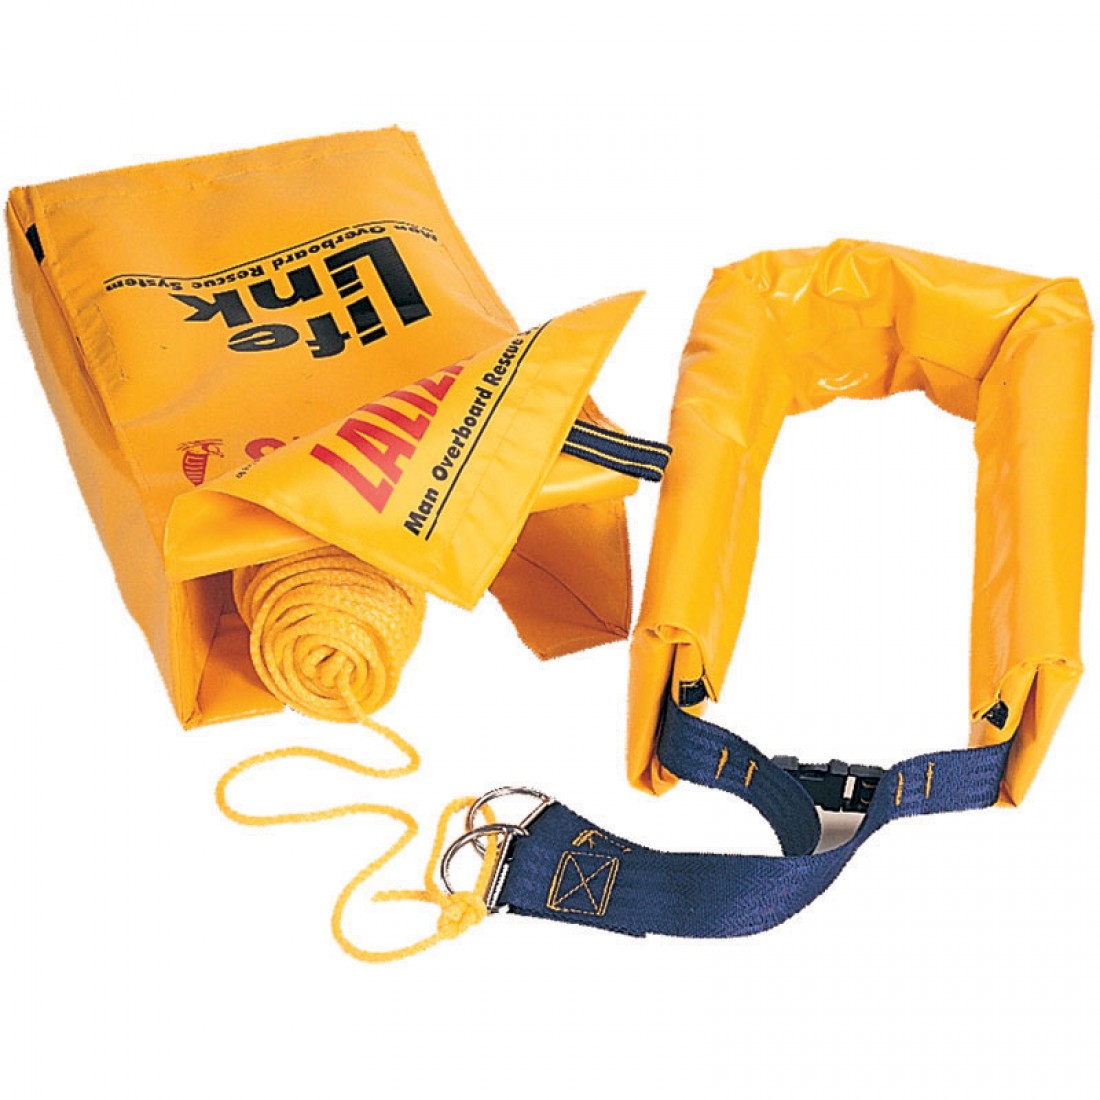 Спасательный набор. Жёлтая сумочка спасательная. Линь спасательный. Спасательный маячок lalizas.